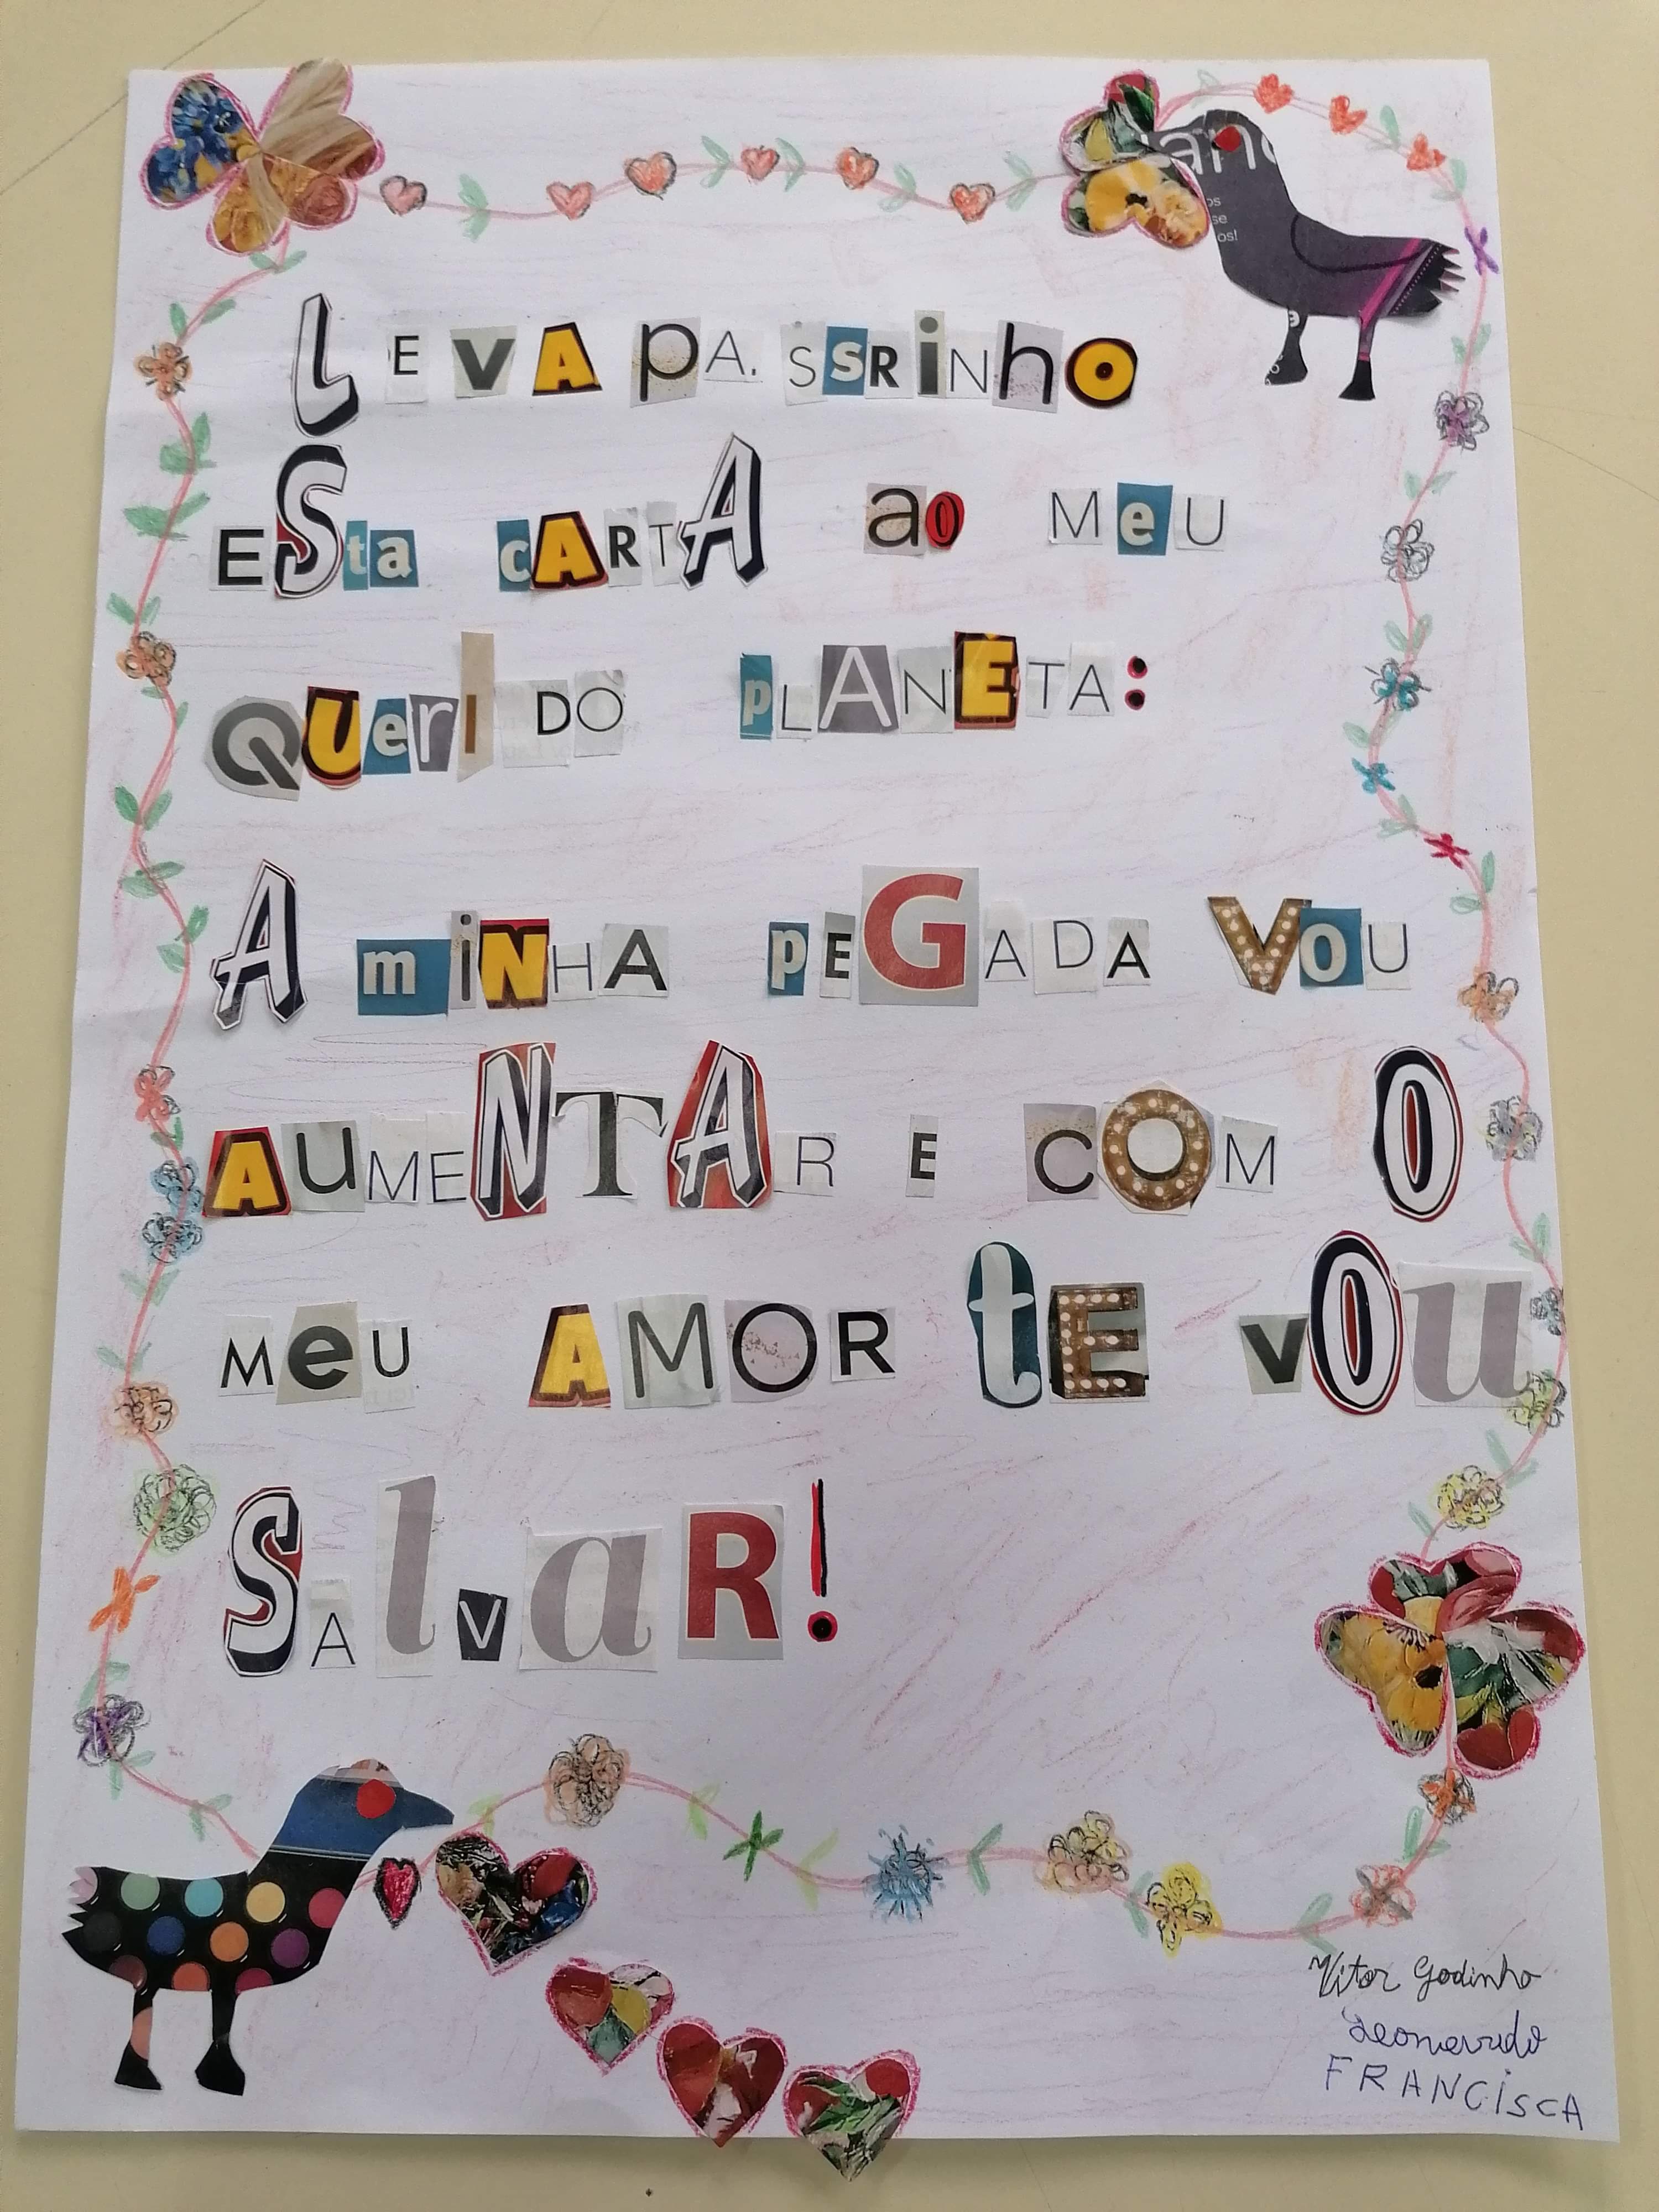 Vítor Godinho 9.ano<br />
Francisca Oliveira 8.ano<br />
Leonardo Sá 6.ano <br />
(Grupo da Educação Especial)<br/><br/>Leva, passarinho, esta carta <br />
Ao meu querido planeta:<br />
A minha pegada vou aumentar<br />
E com o meu amor te vou salvar!